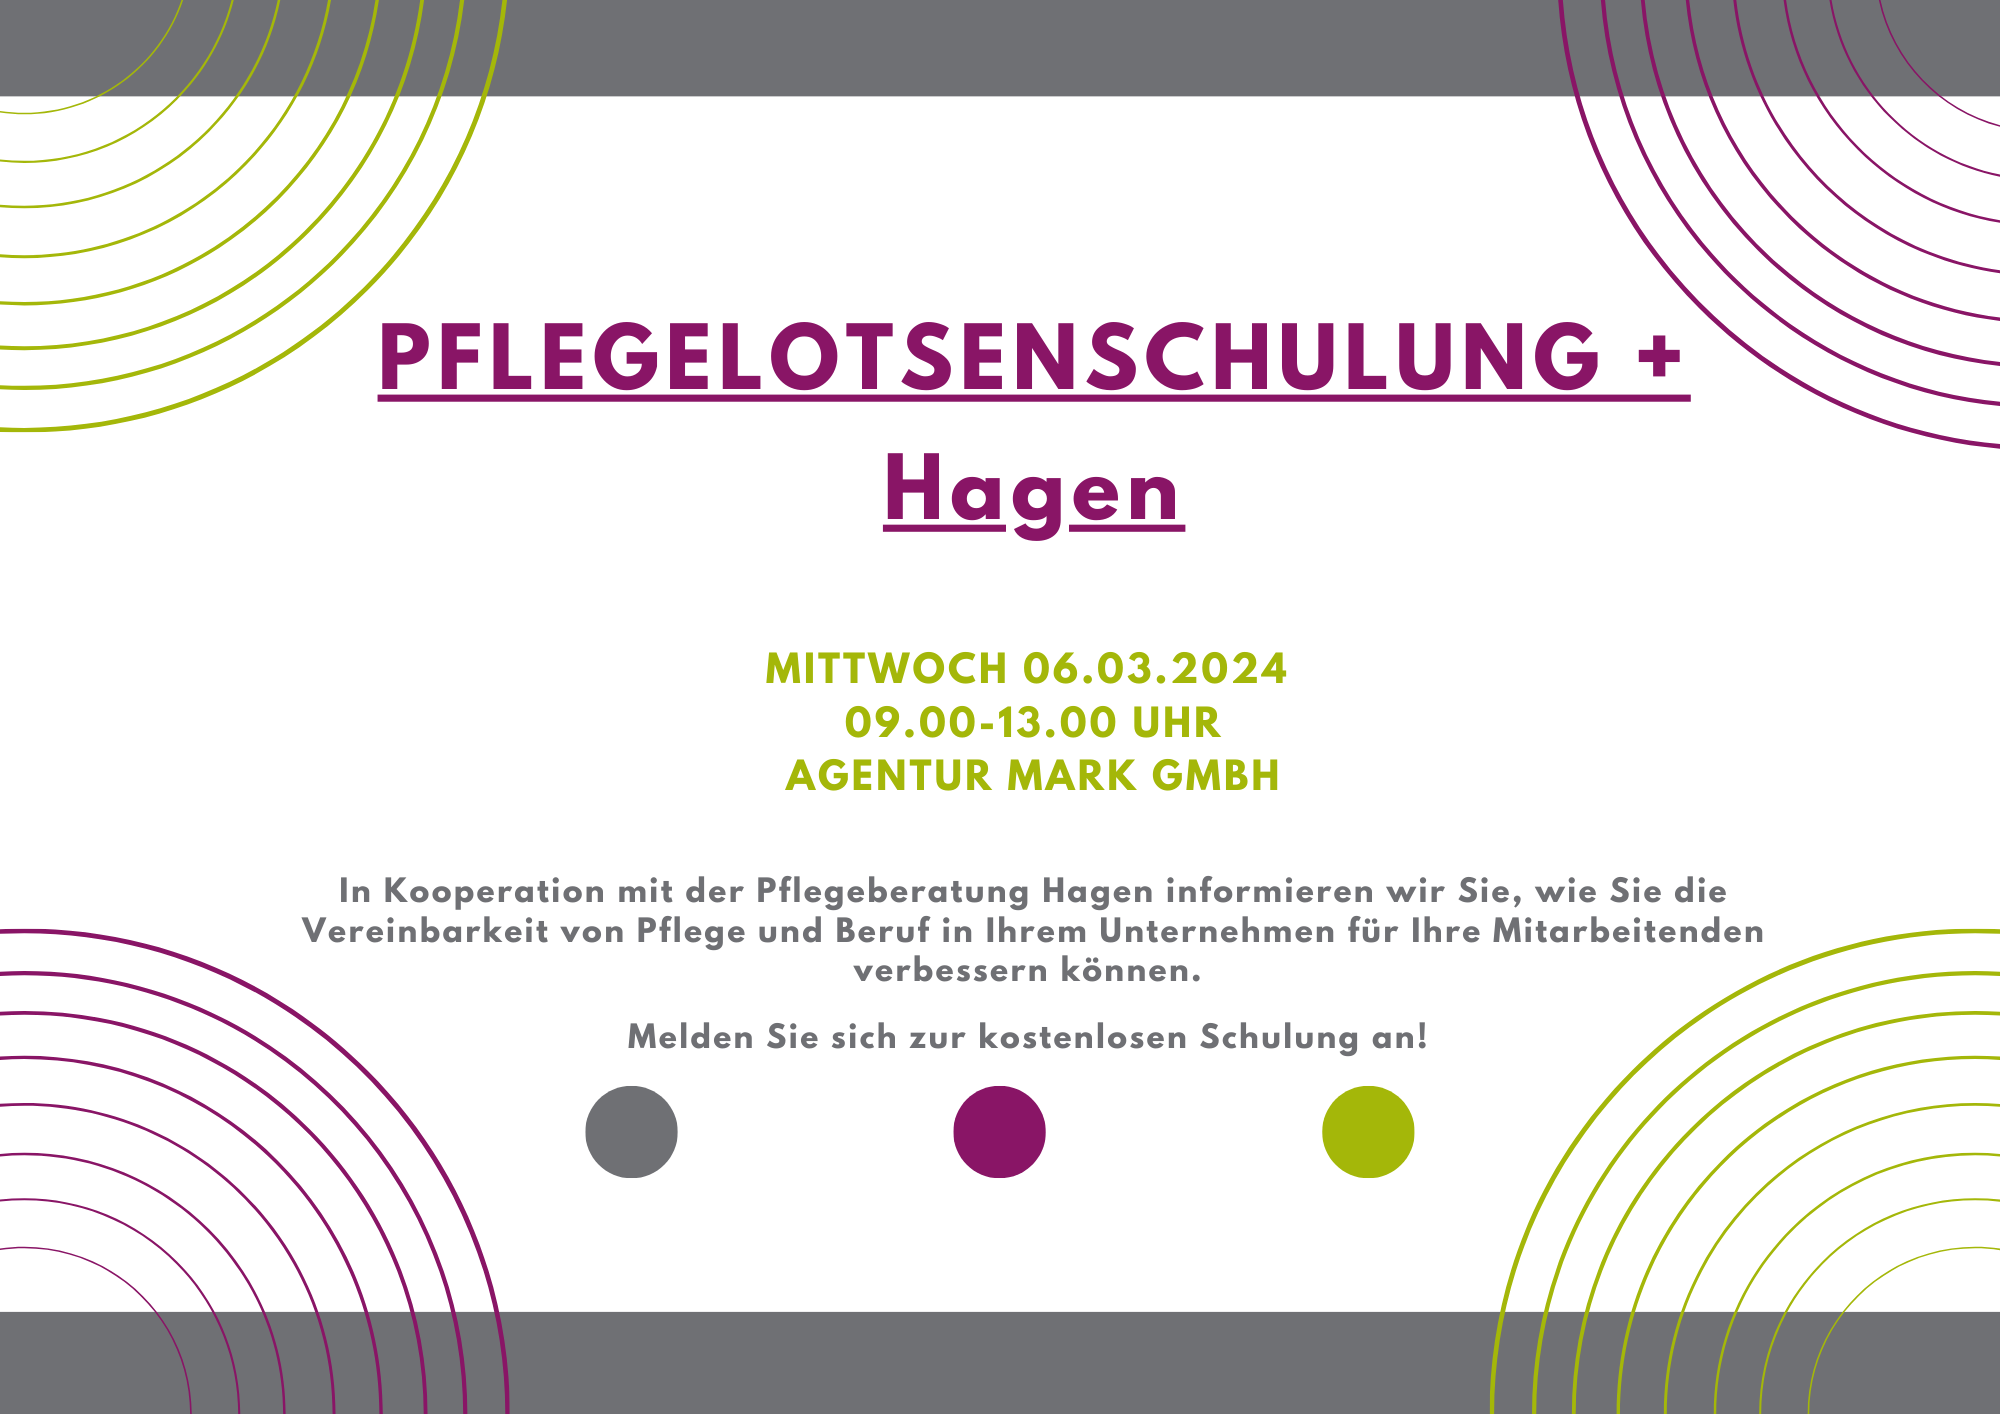 Pflegelotsenschulung + Hagen 06.03.2024 